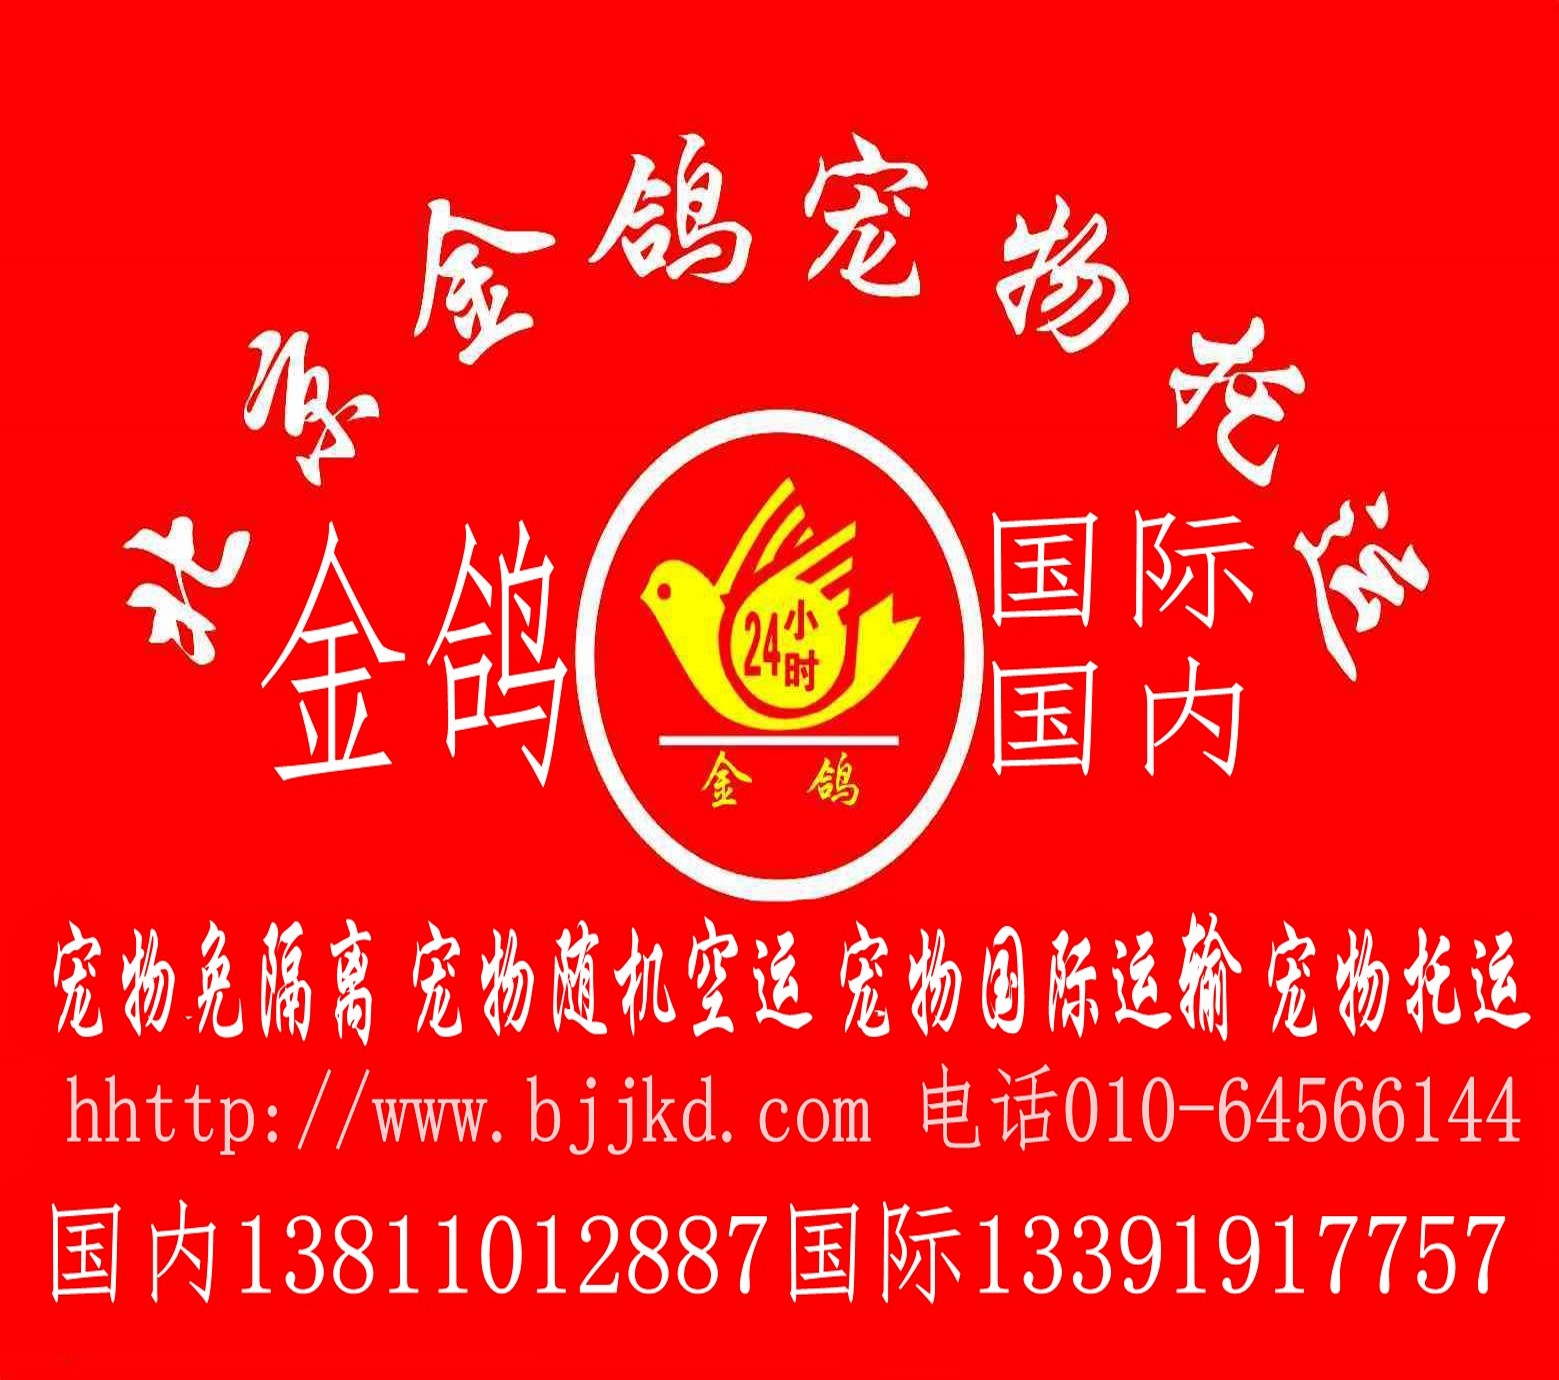 北京宠物托运 宠物空运 宠物运输 北京金鸽宠物托运 全国宠物托运